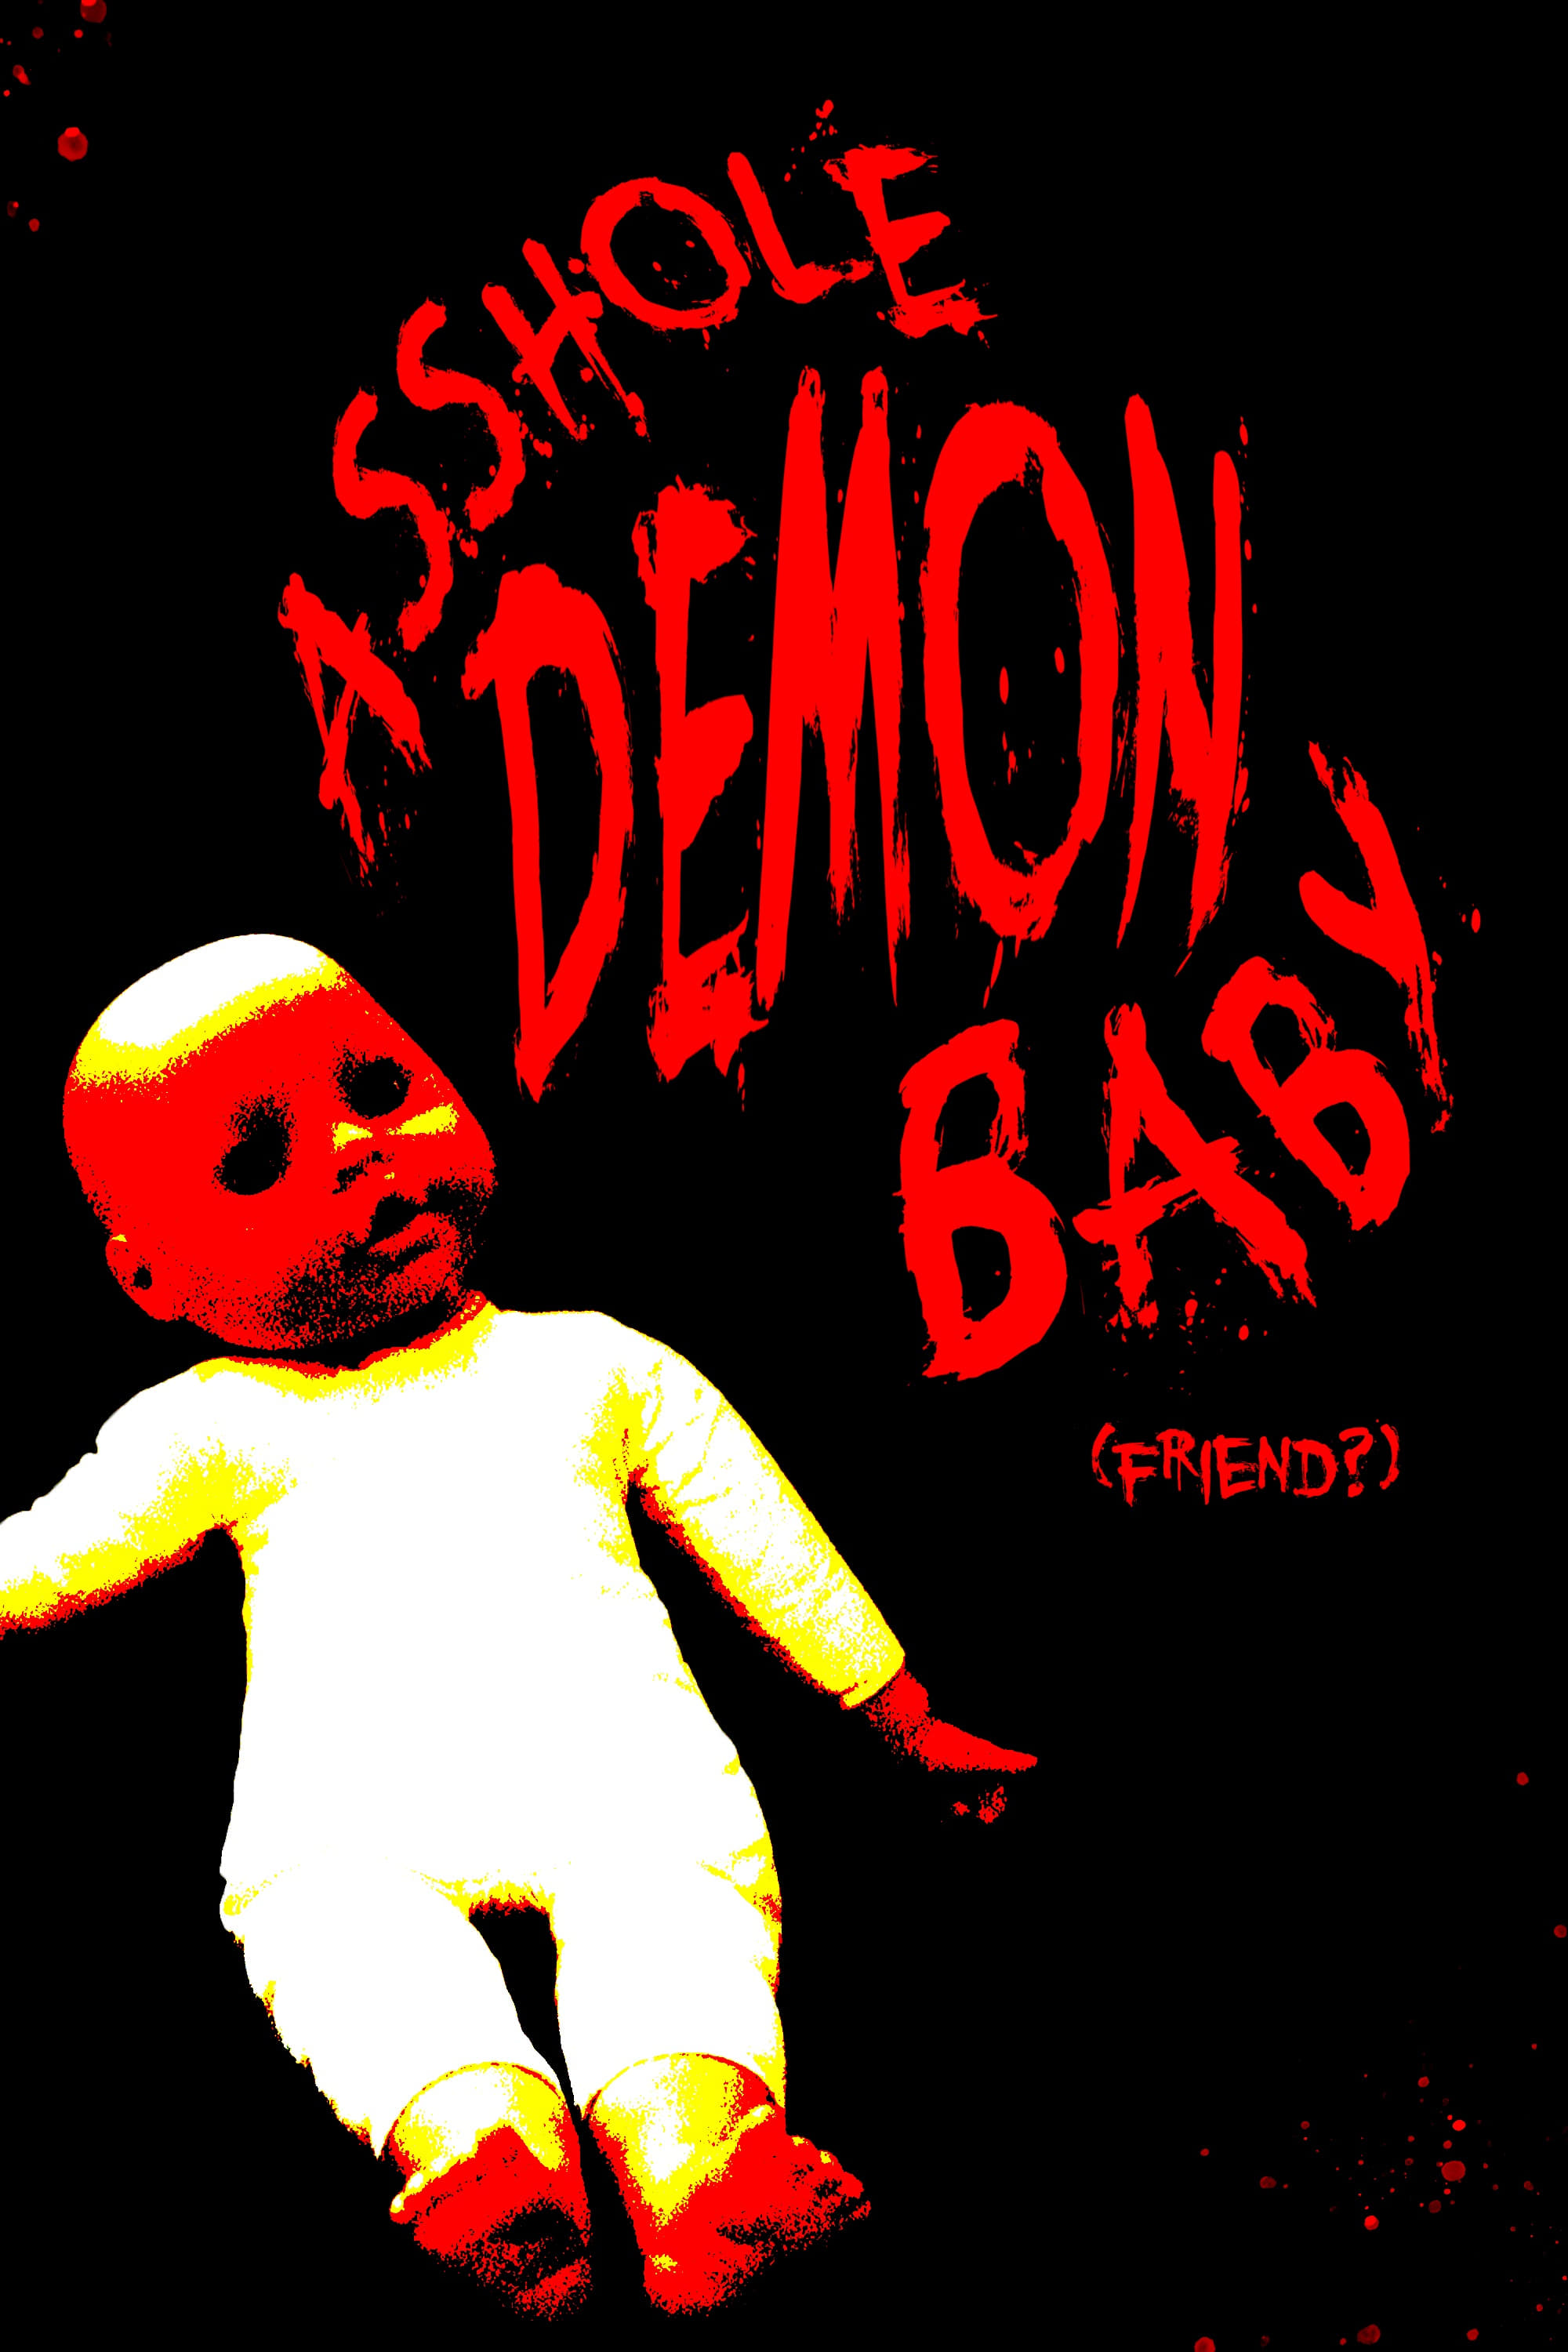 Asshole Demon Baby (friend?)